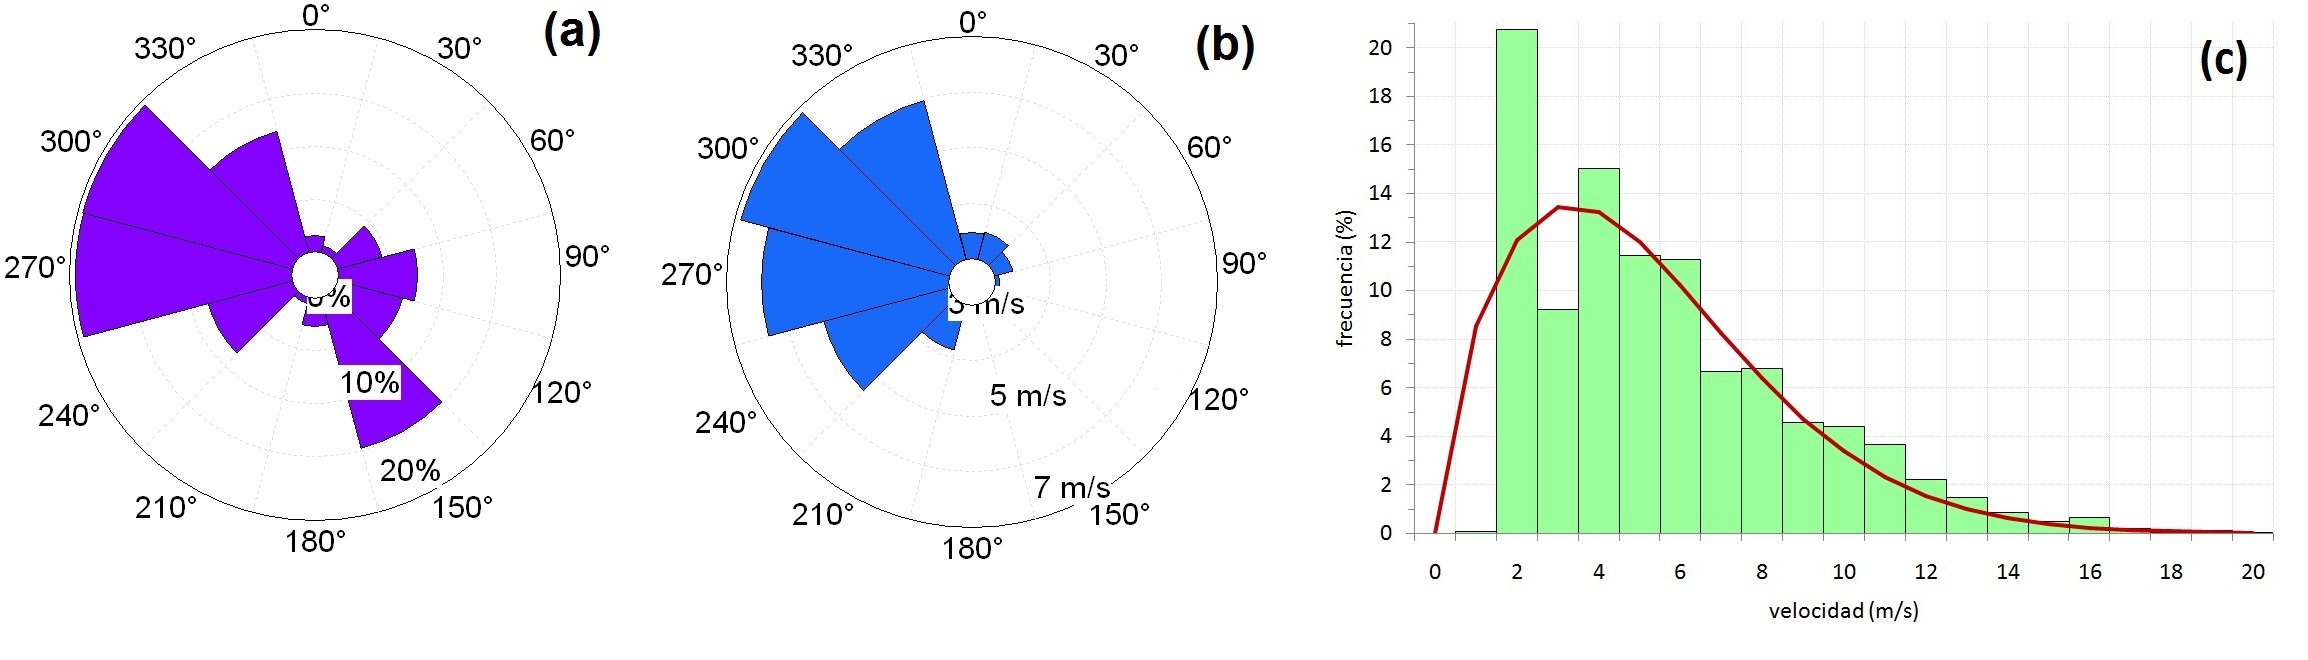 Clima eólico de S. C. de Bariloche (SCB). (a) distribución de frecuencias de la
dirección del viento; (b) velocidad
media anual por dirección; (c)
distribución de frecuencias de la velocidad del viento y f(v) de Weibull.